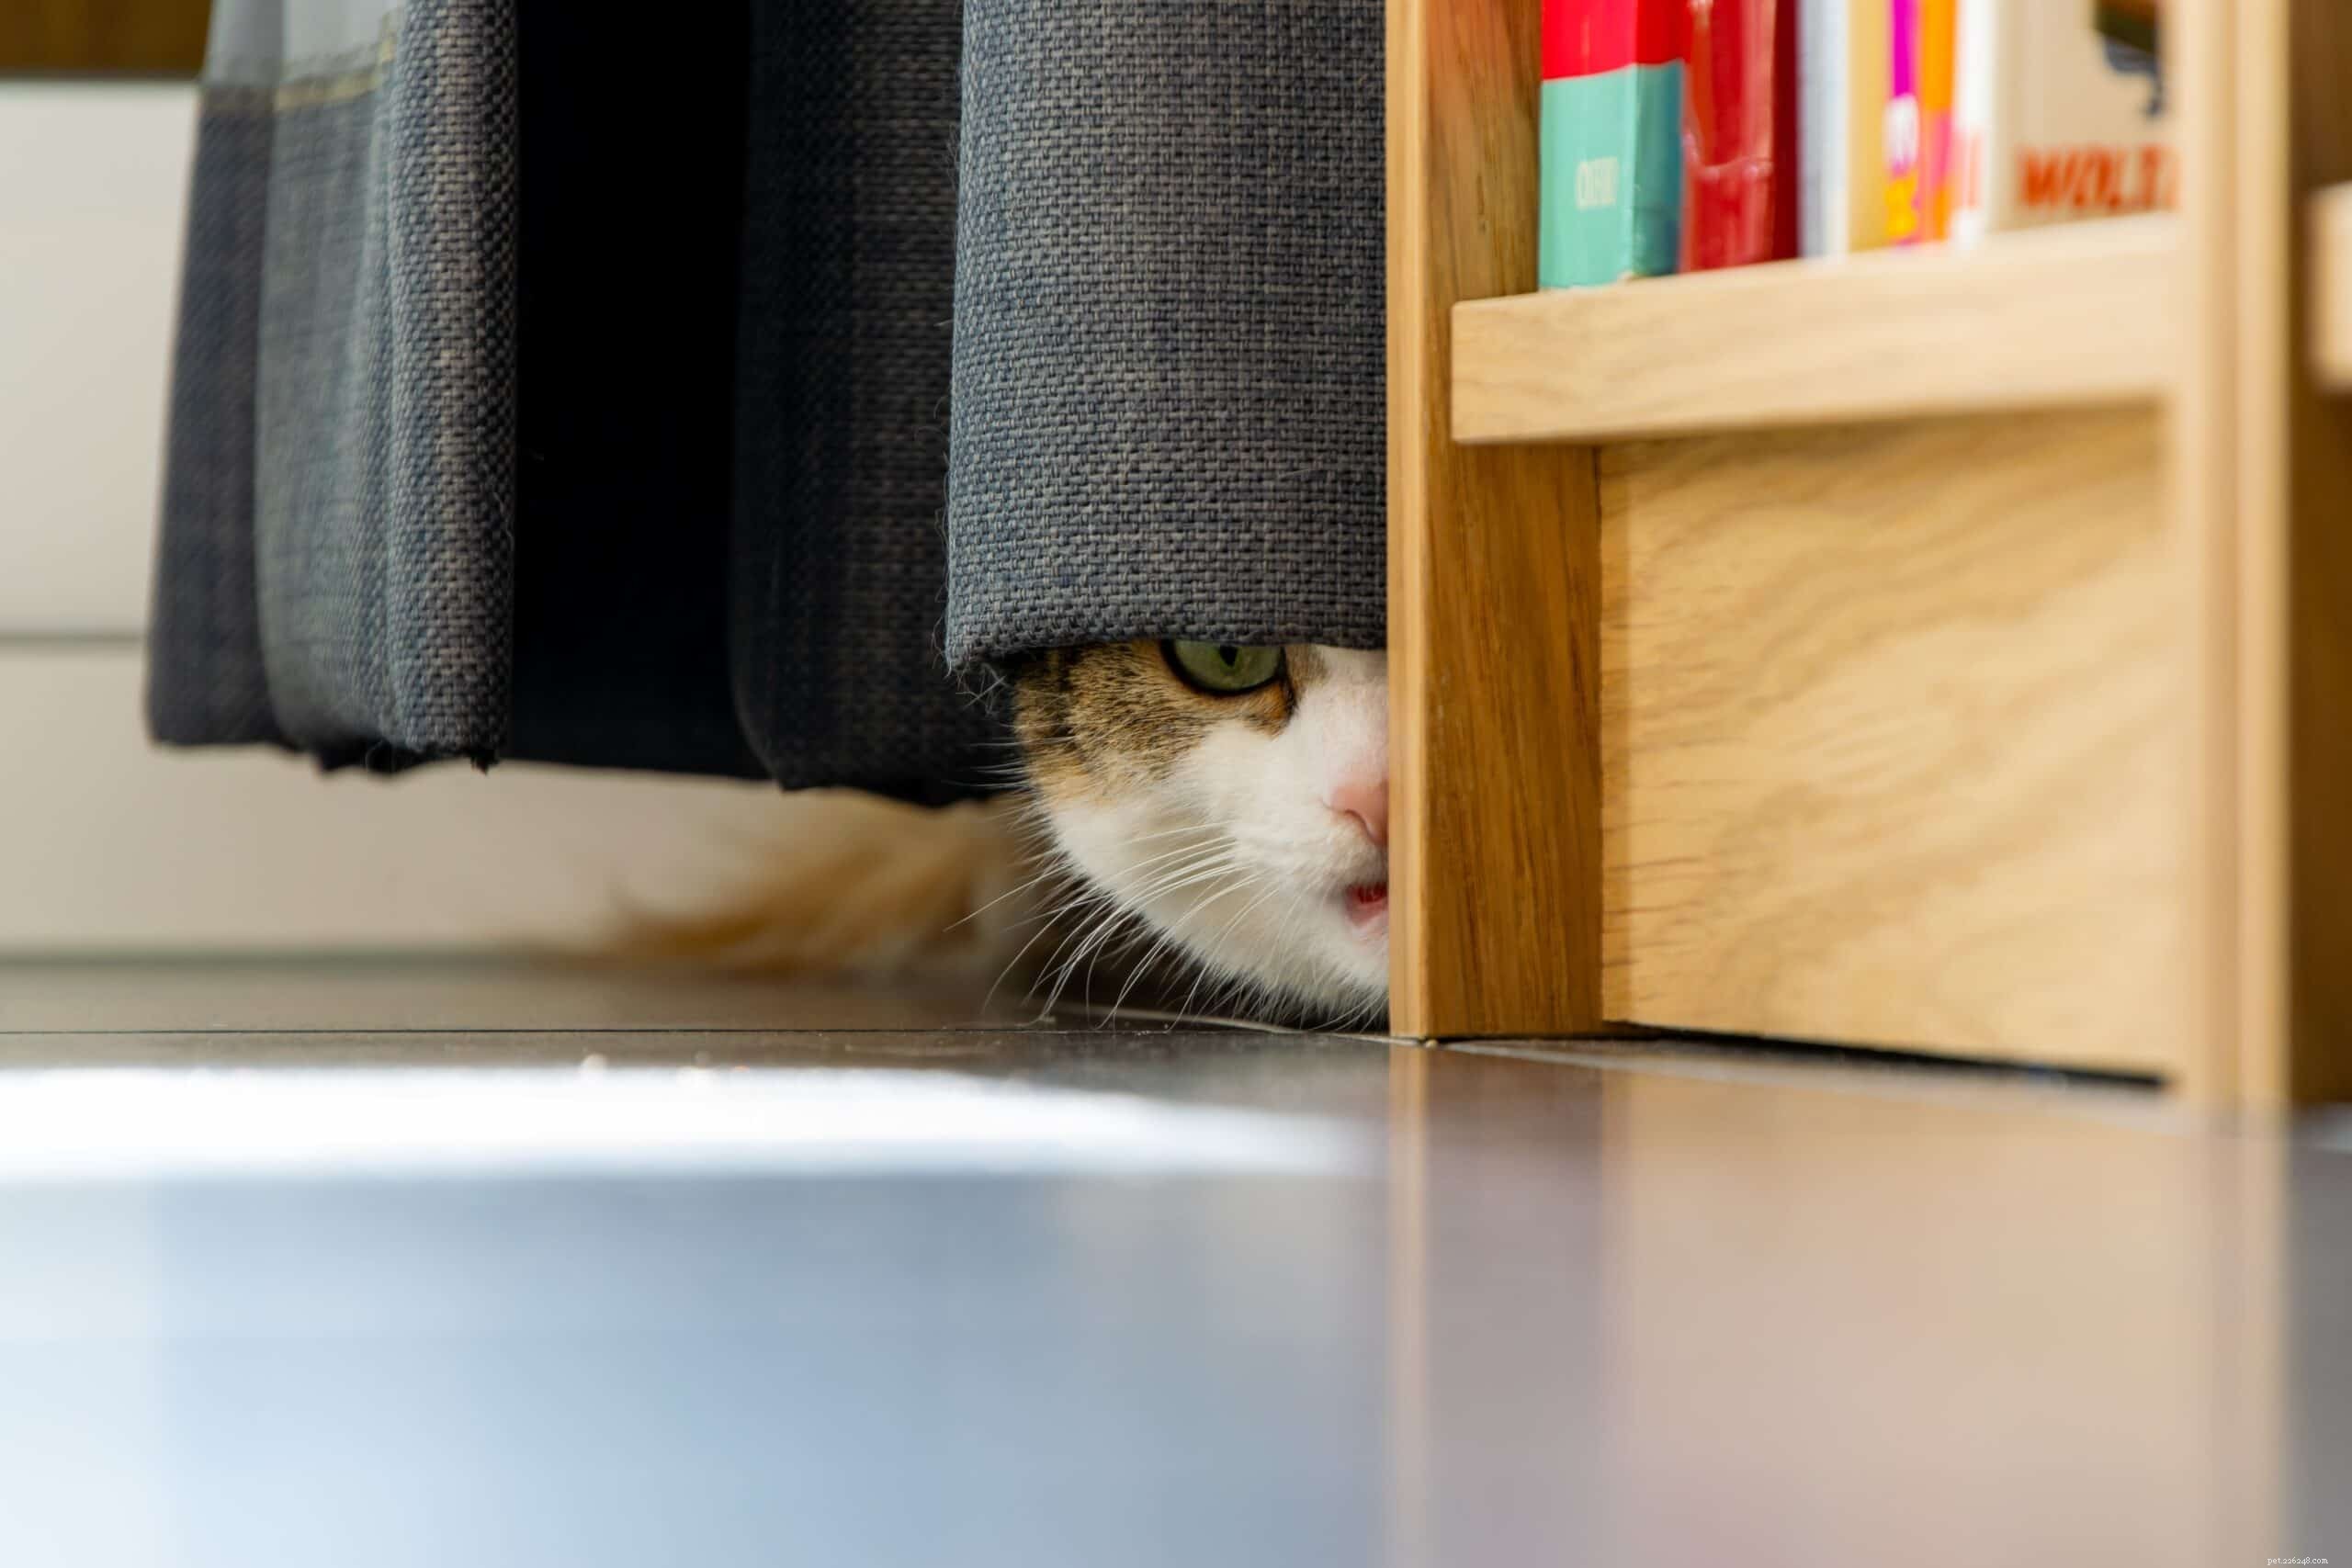 Proč se kočky bojí hlasitých zvuků?